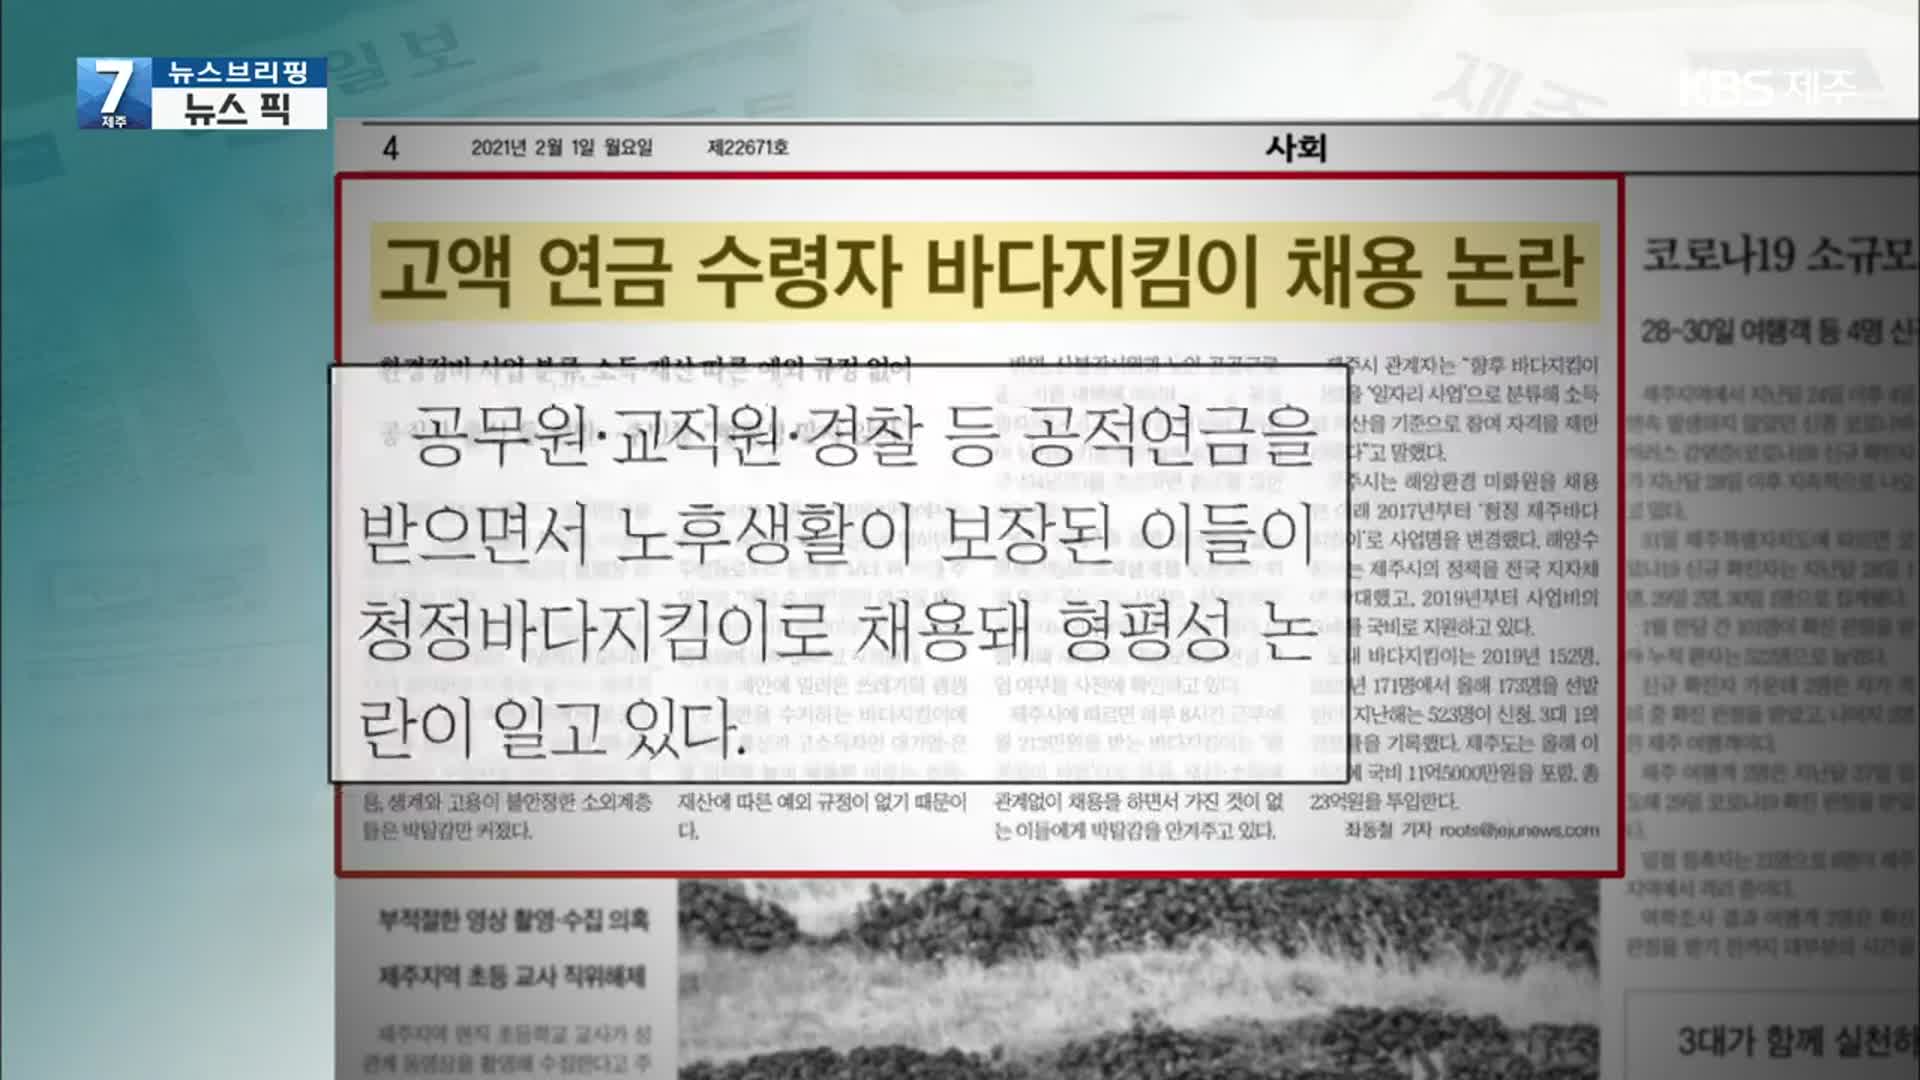 [뉴스브리핑] “고액 연금 수령자 바다지킴이 채용 논란” 외